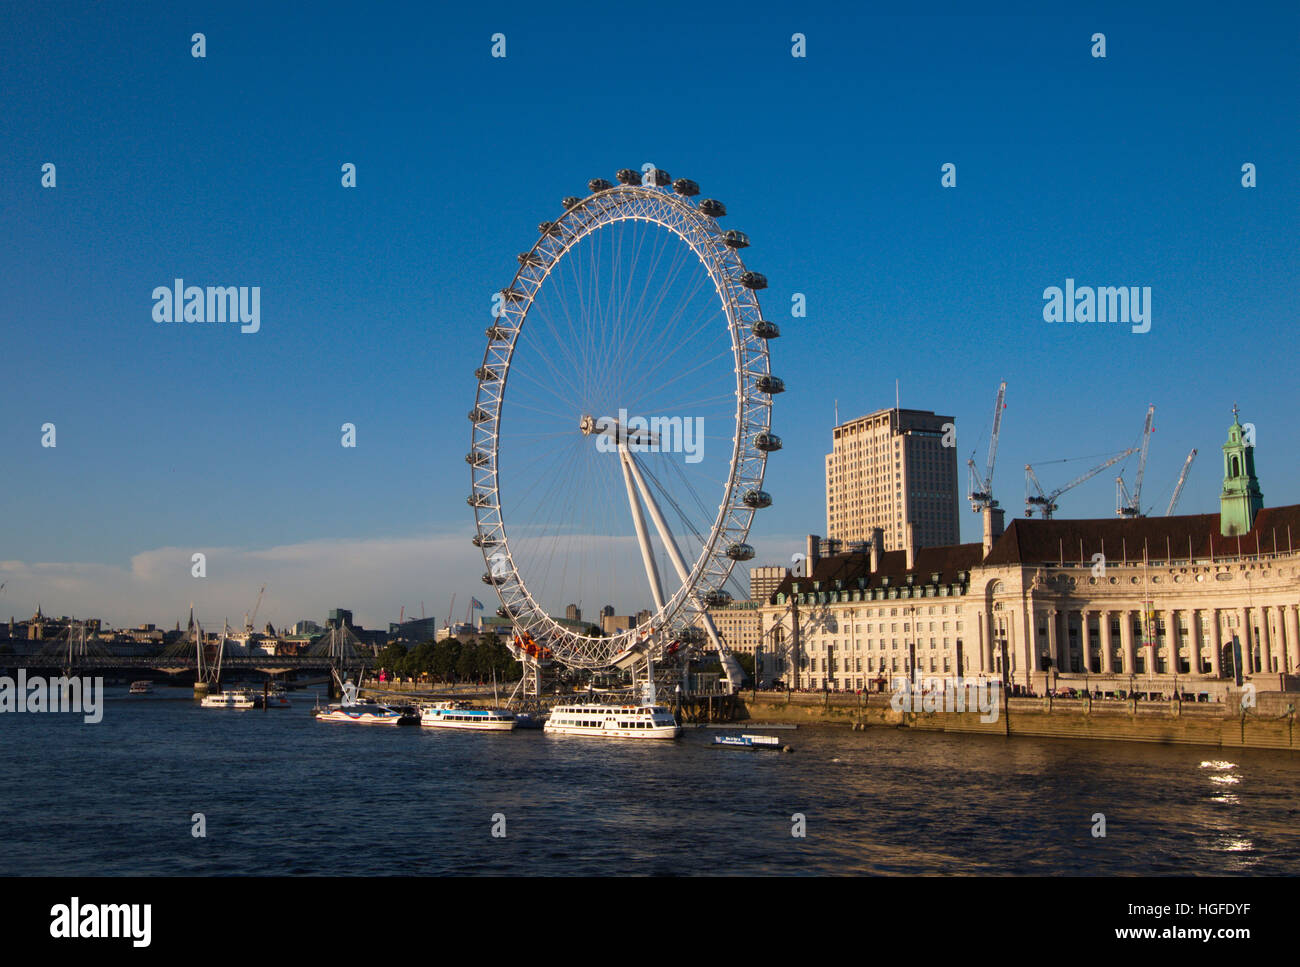 London Eye in London Stock Photo